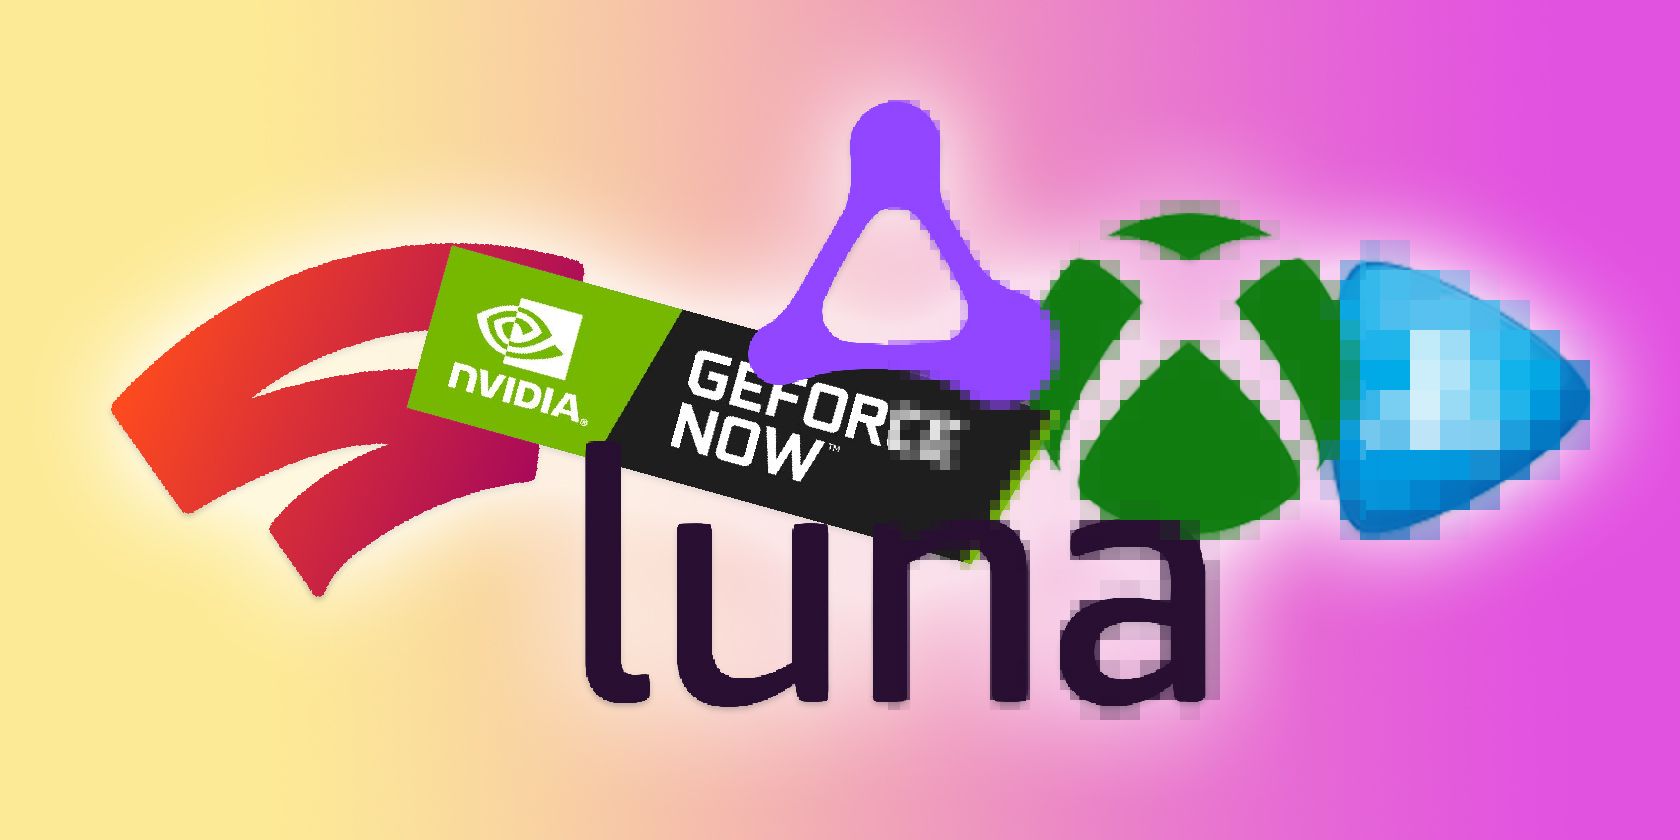 Stadia GeForce Now Luna Xbox and PSnow Logos With Gradual Pixilation